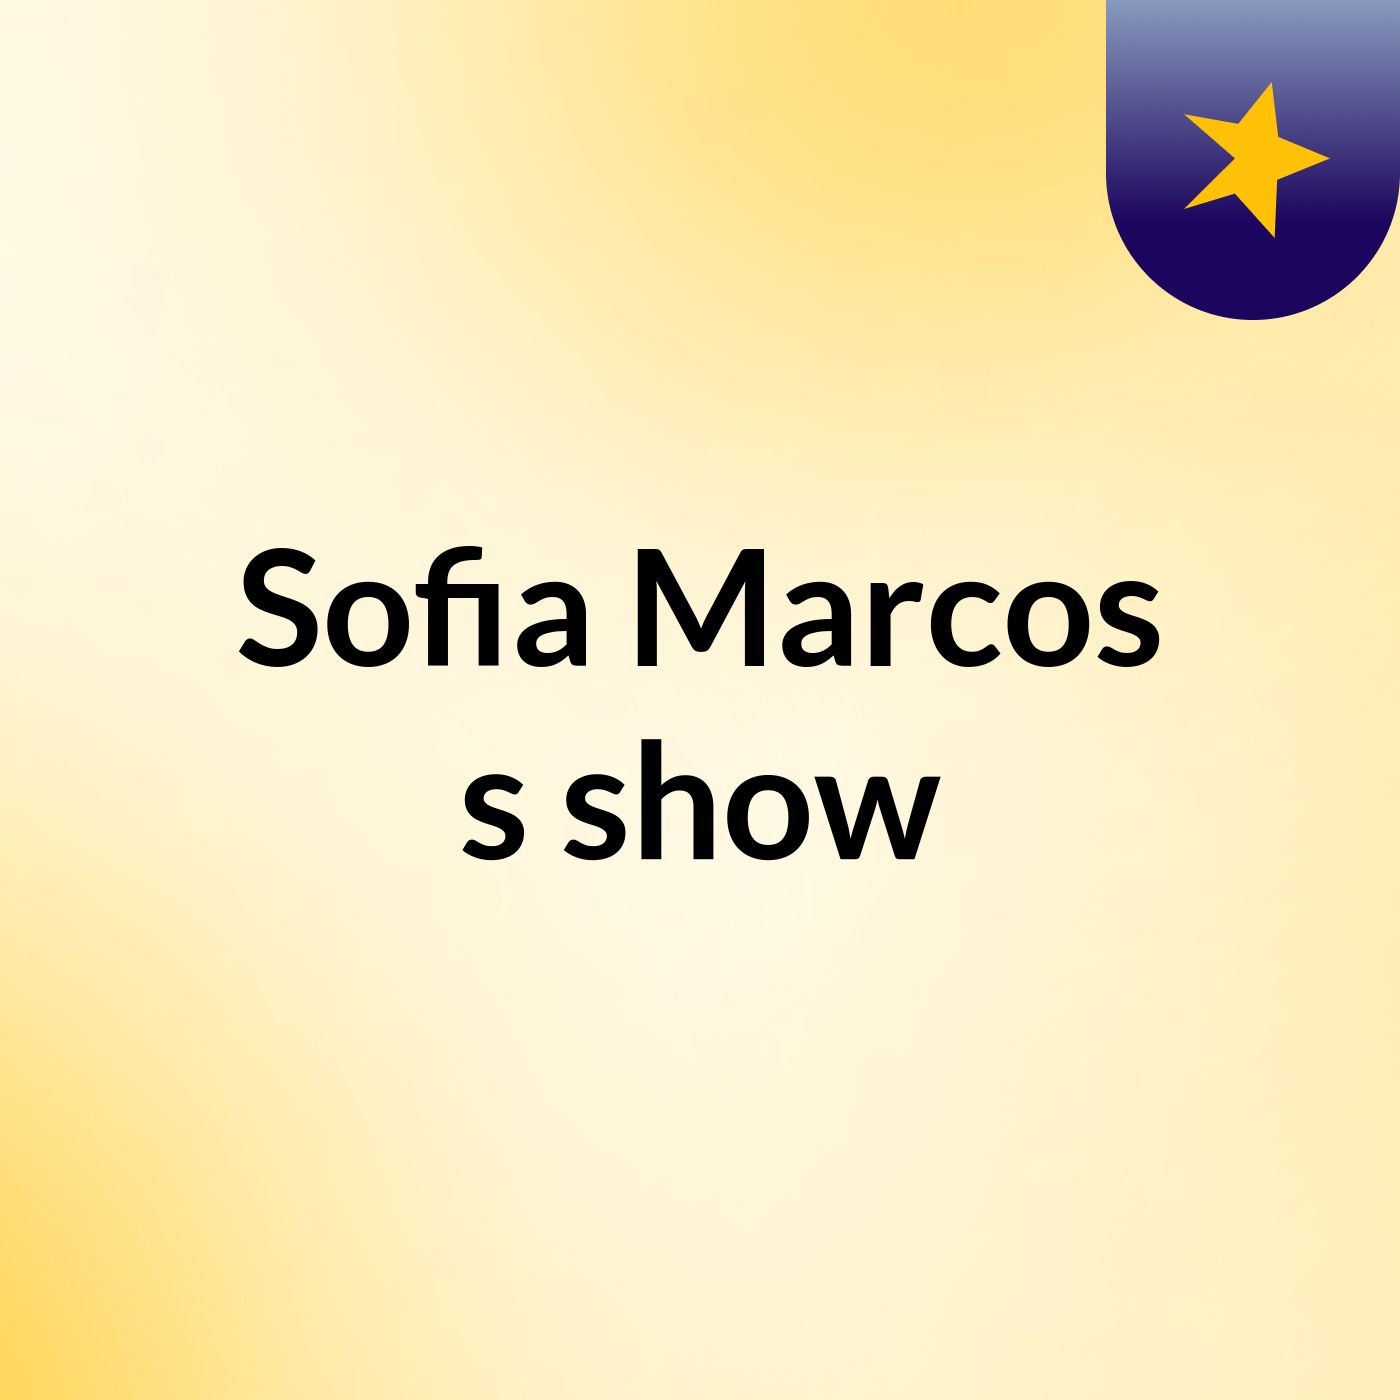 Sofia Marcos's show